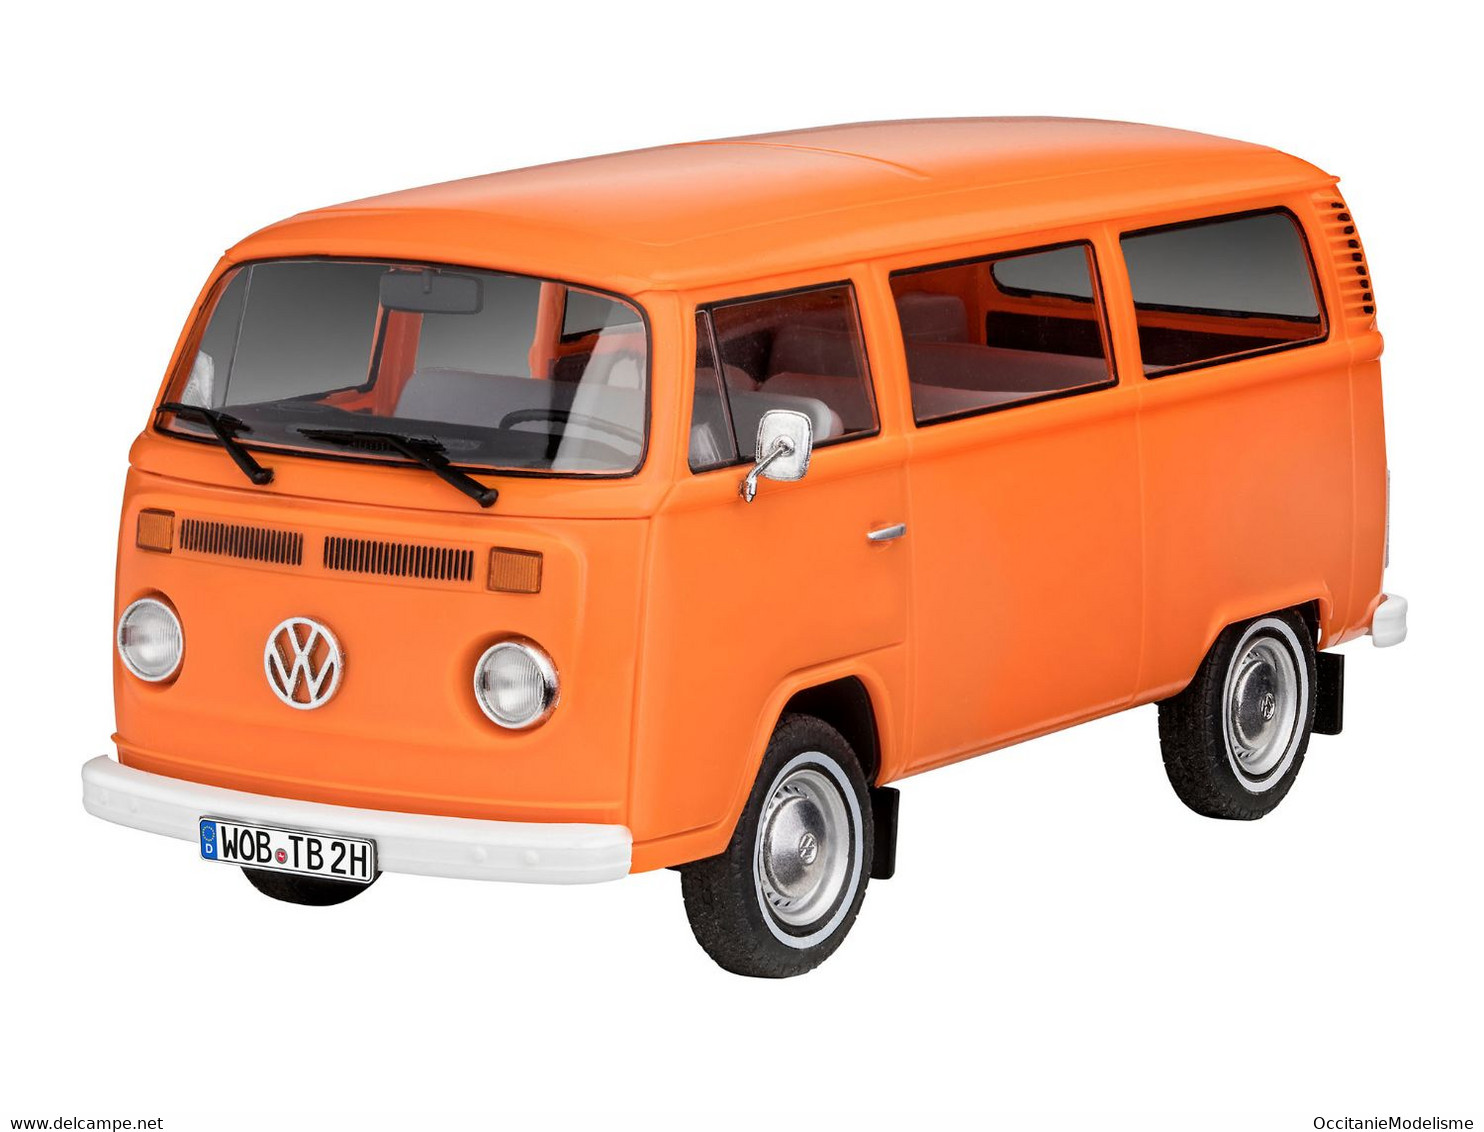 Revell - SET VW Volkswagen T2 Bus Combi + Peintures Easy-Click Maquette Kit Plastique Réf. 67667 Neuf NBO 1/24 - Automobili